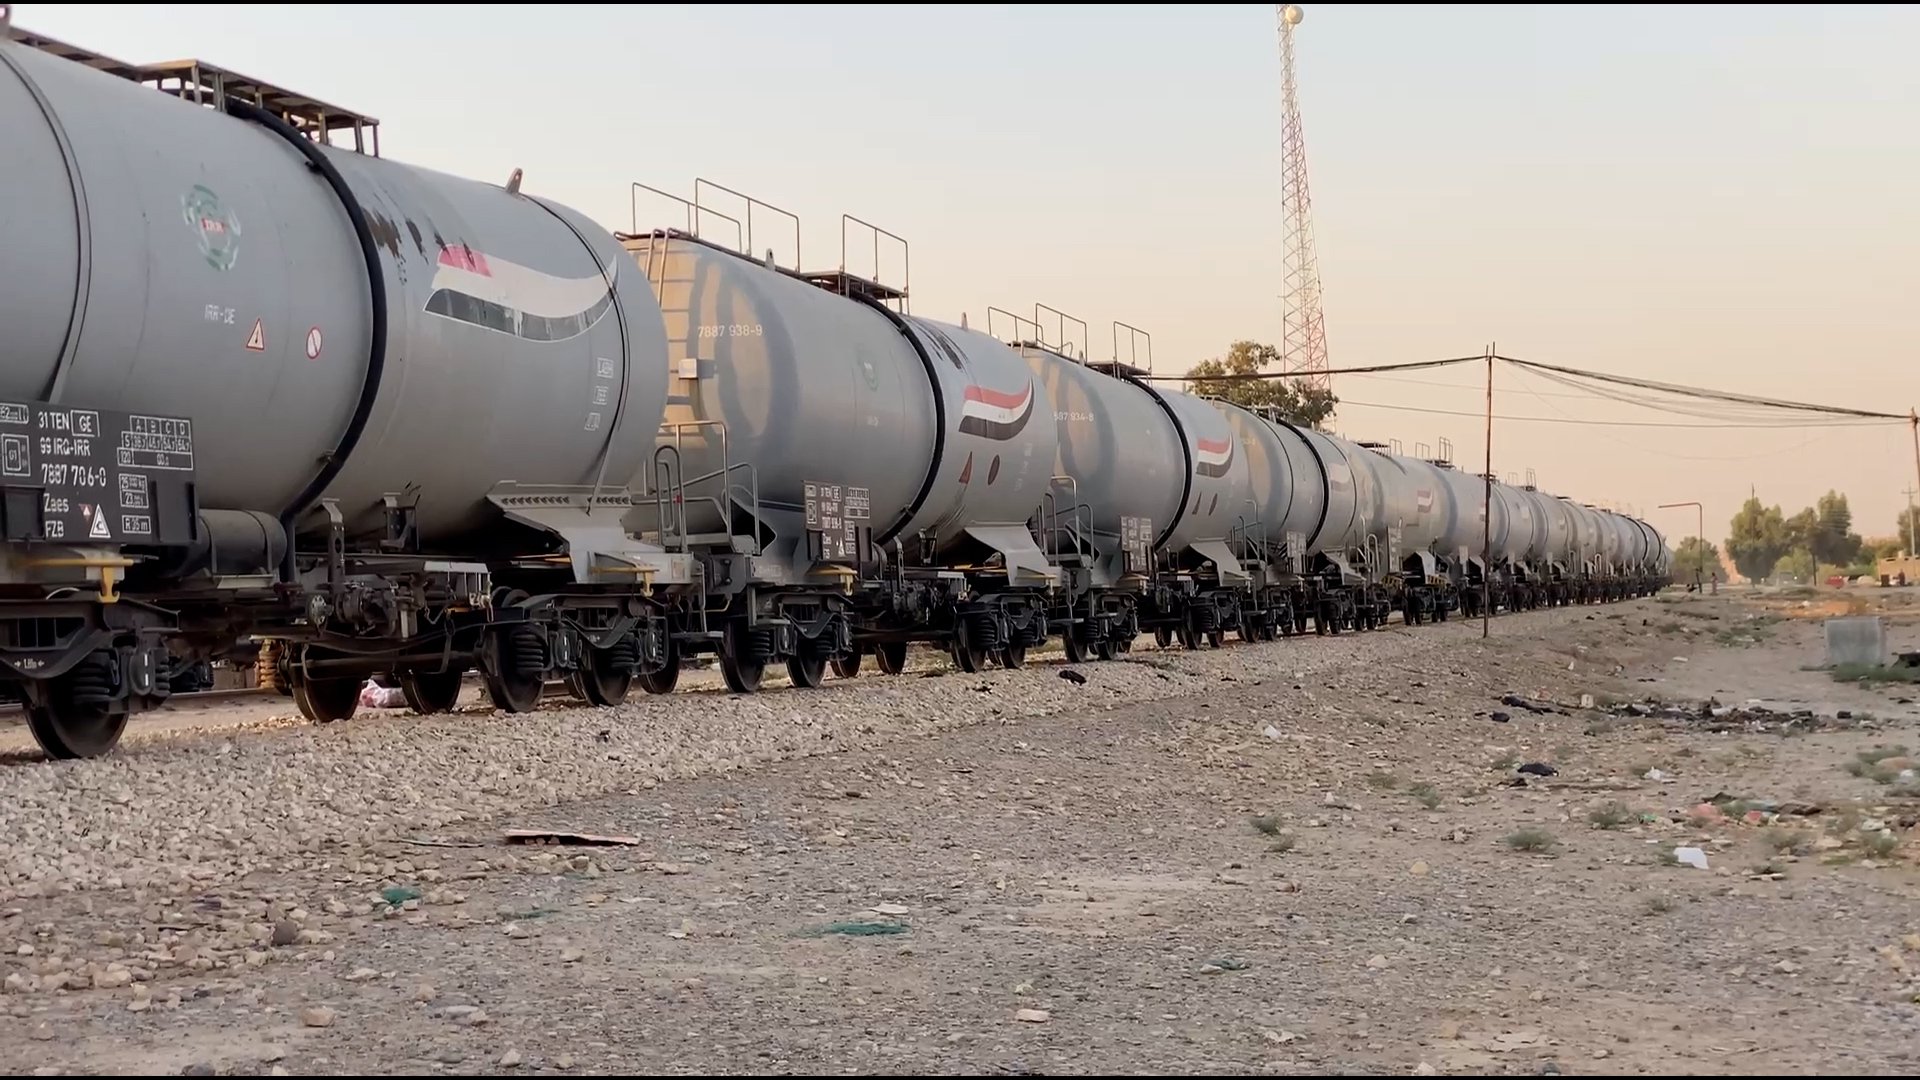 فيديو: مدينة عراقية تواجه مشكلة غريبة.. القطارات الحديثة تحاصرنا!